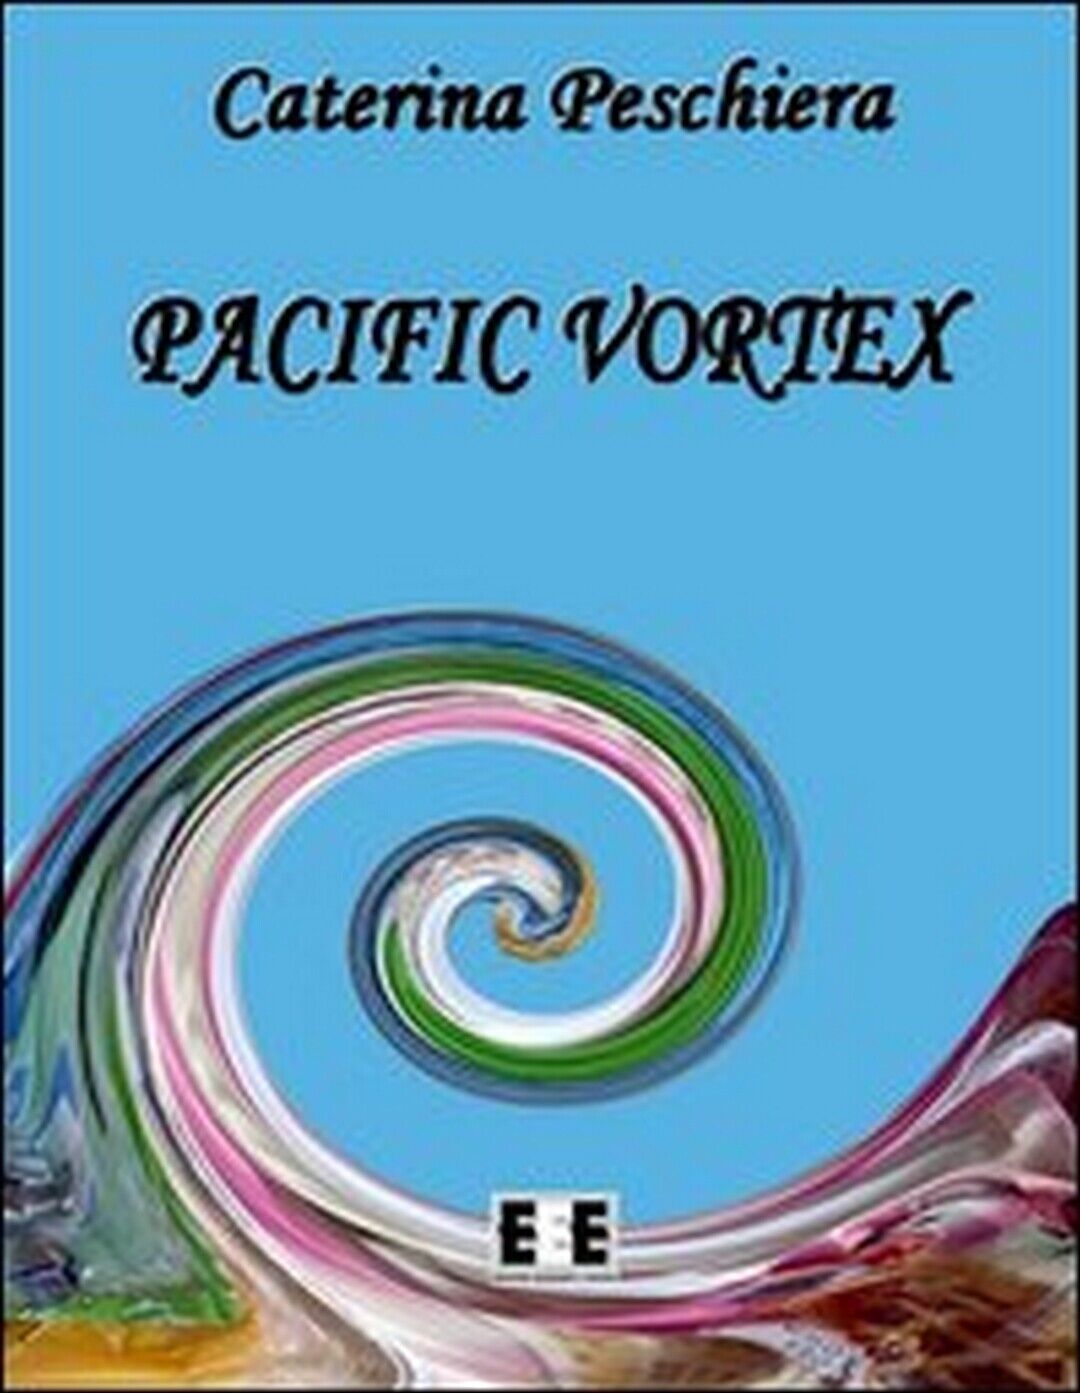 Pacific vortex  di Caterina Peschiera,  2013,  Eee-edizioni Esordienti libro usato